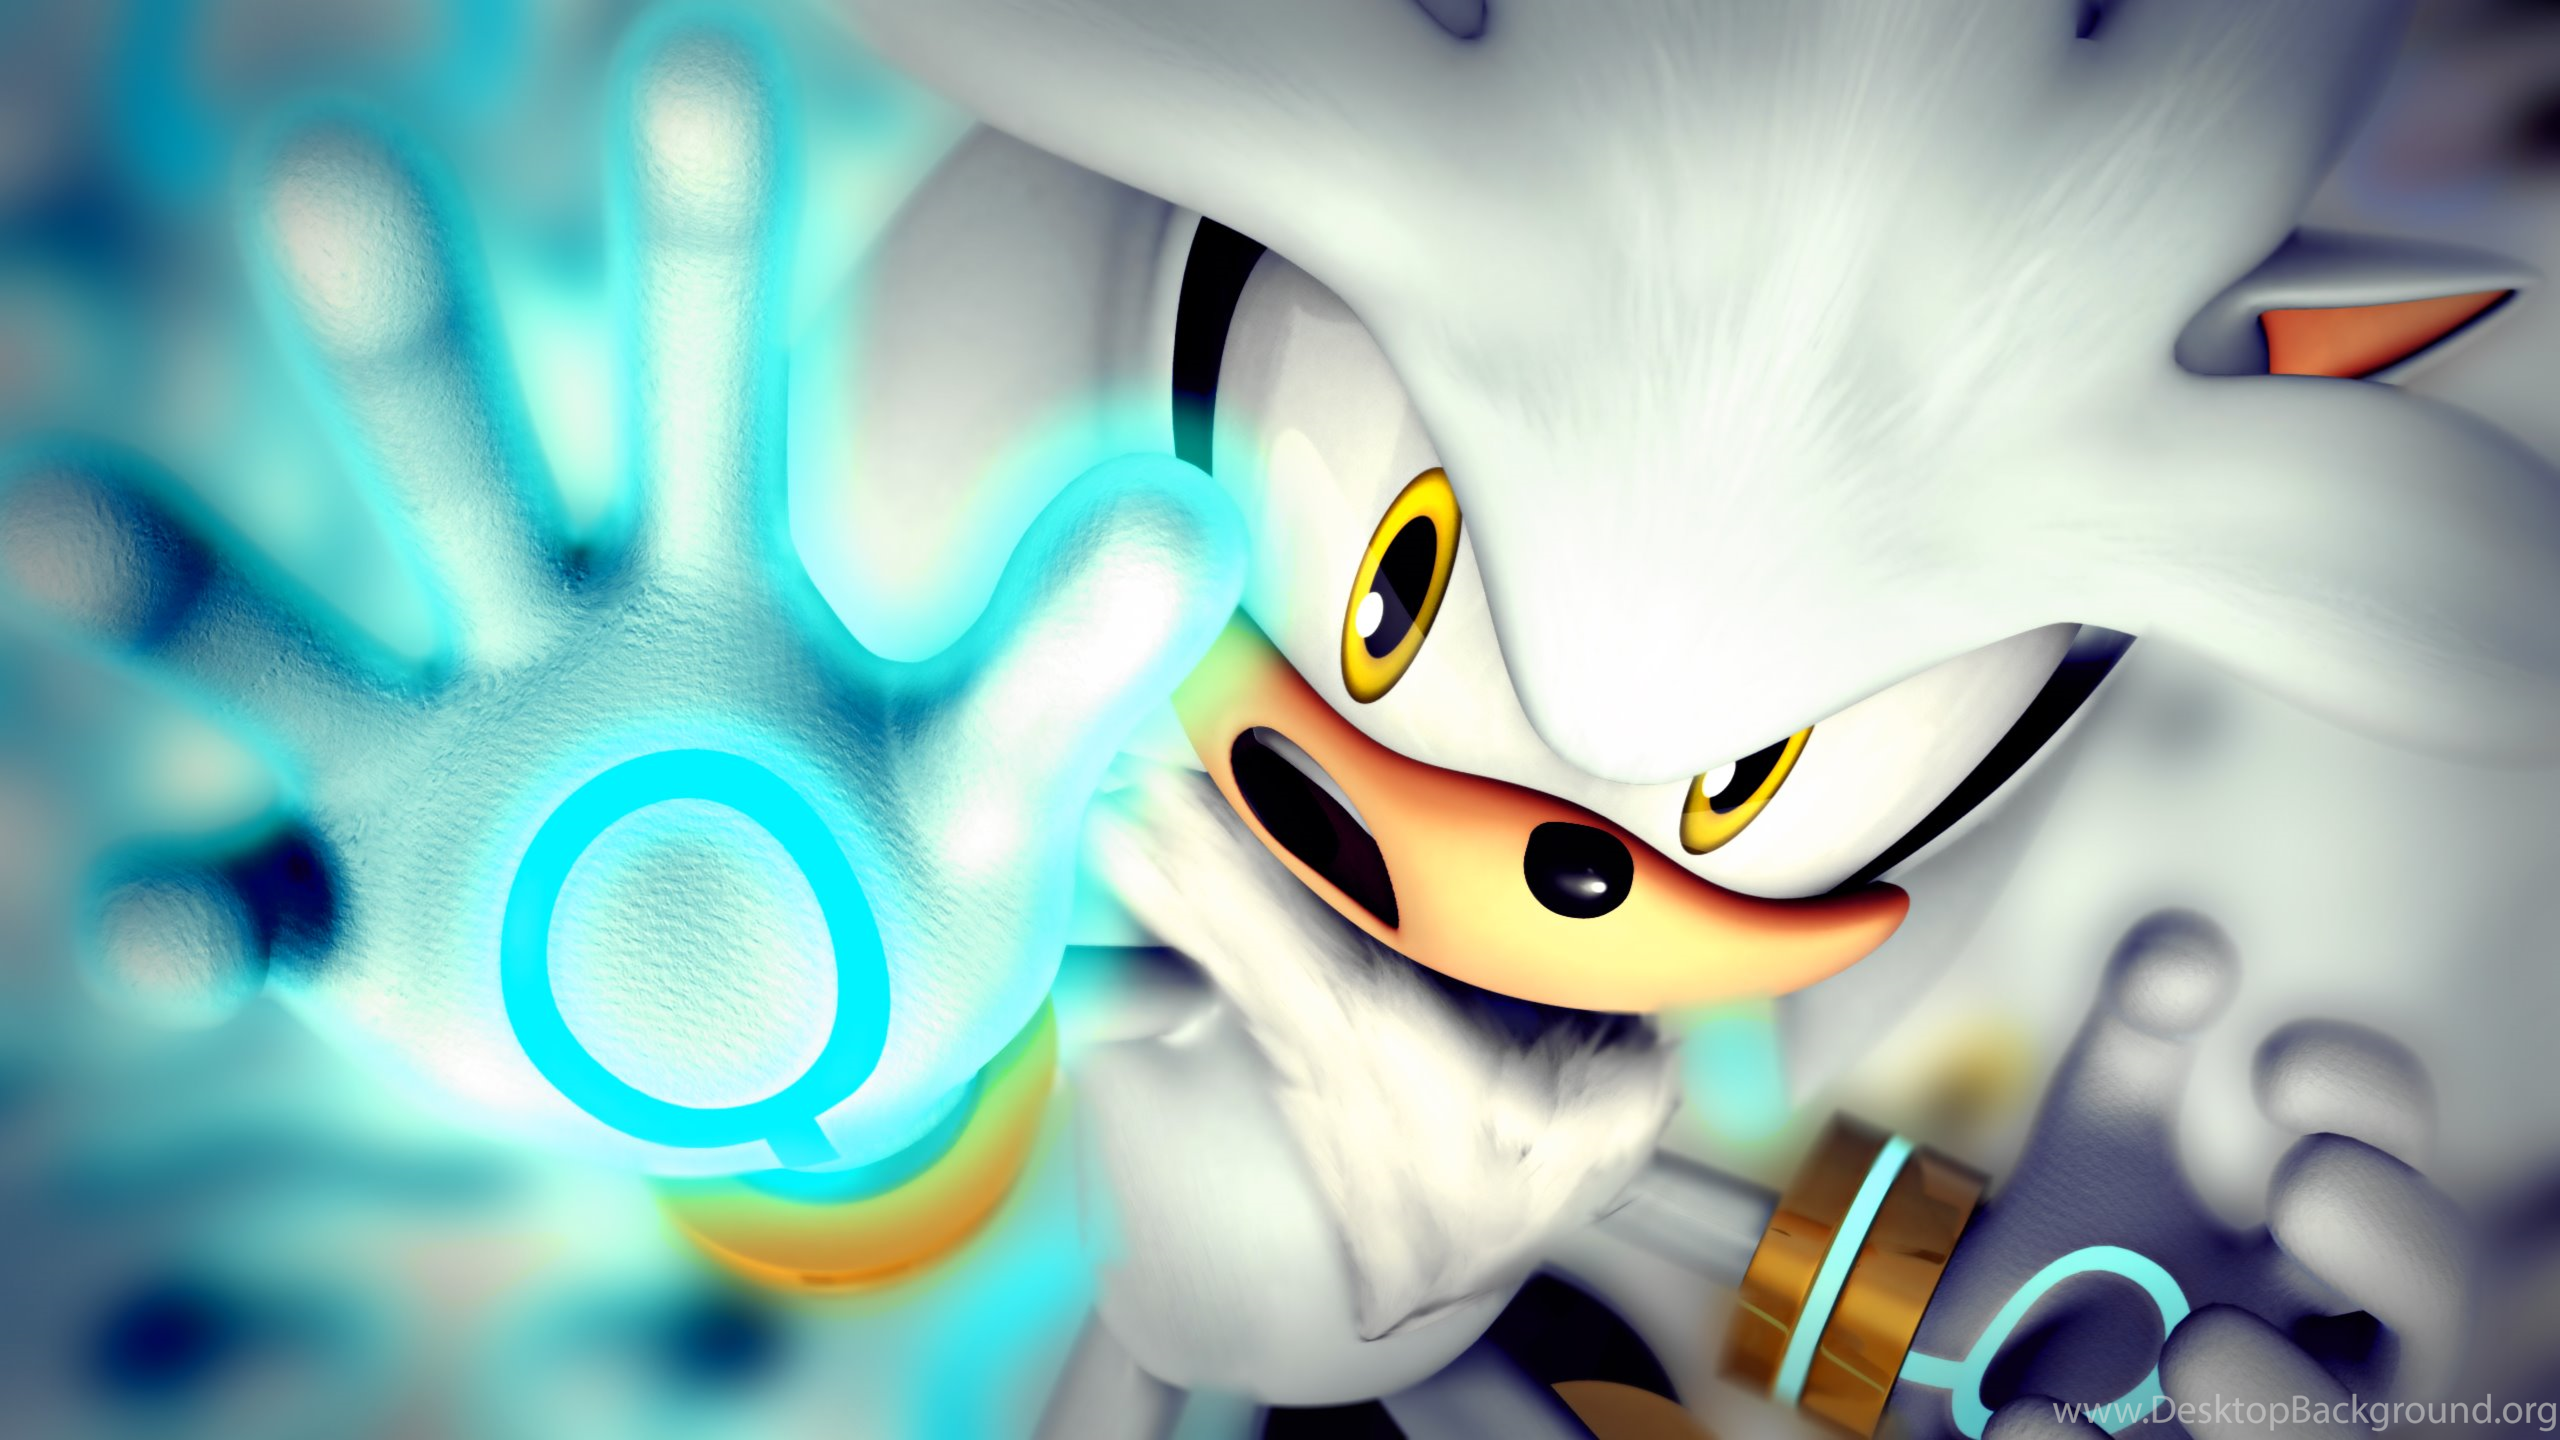 Silver The Hedgehog[7] By Light Rock Desktop Background